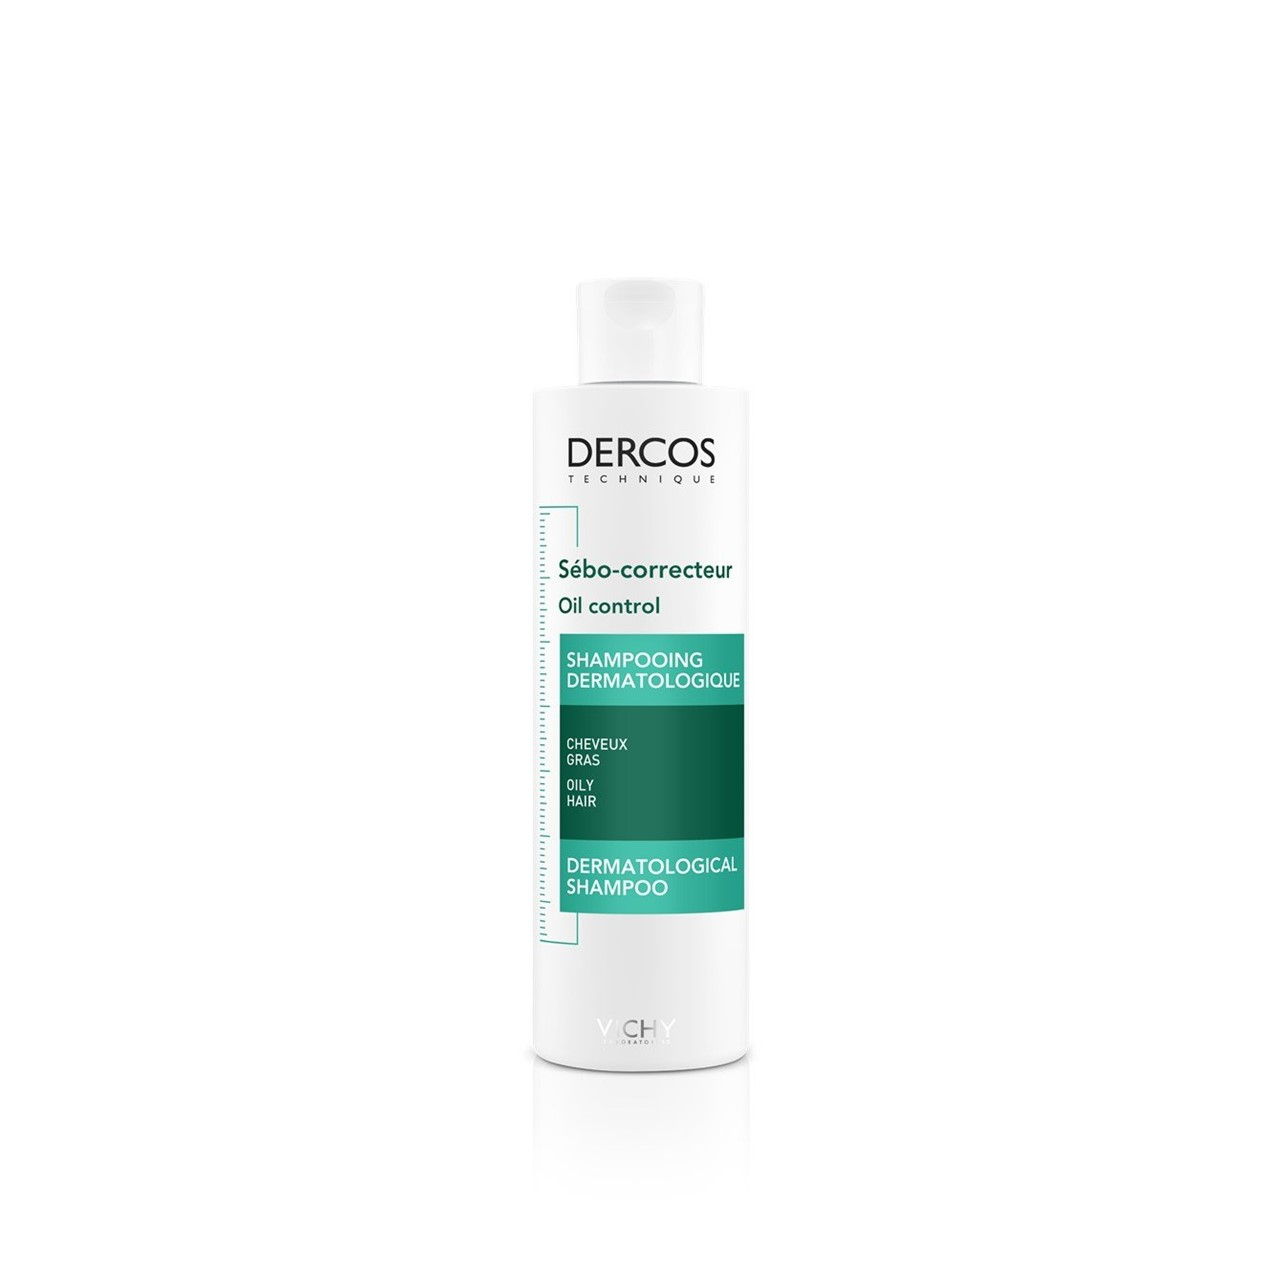 Vichy Dercos Oil Control Dermatological Shampoo 200ml (6.76fl oz)